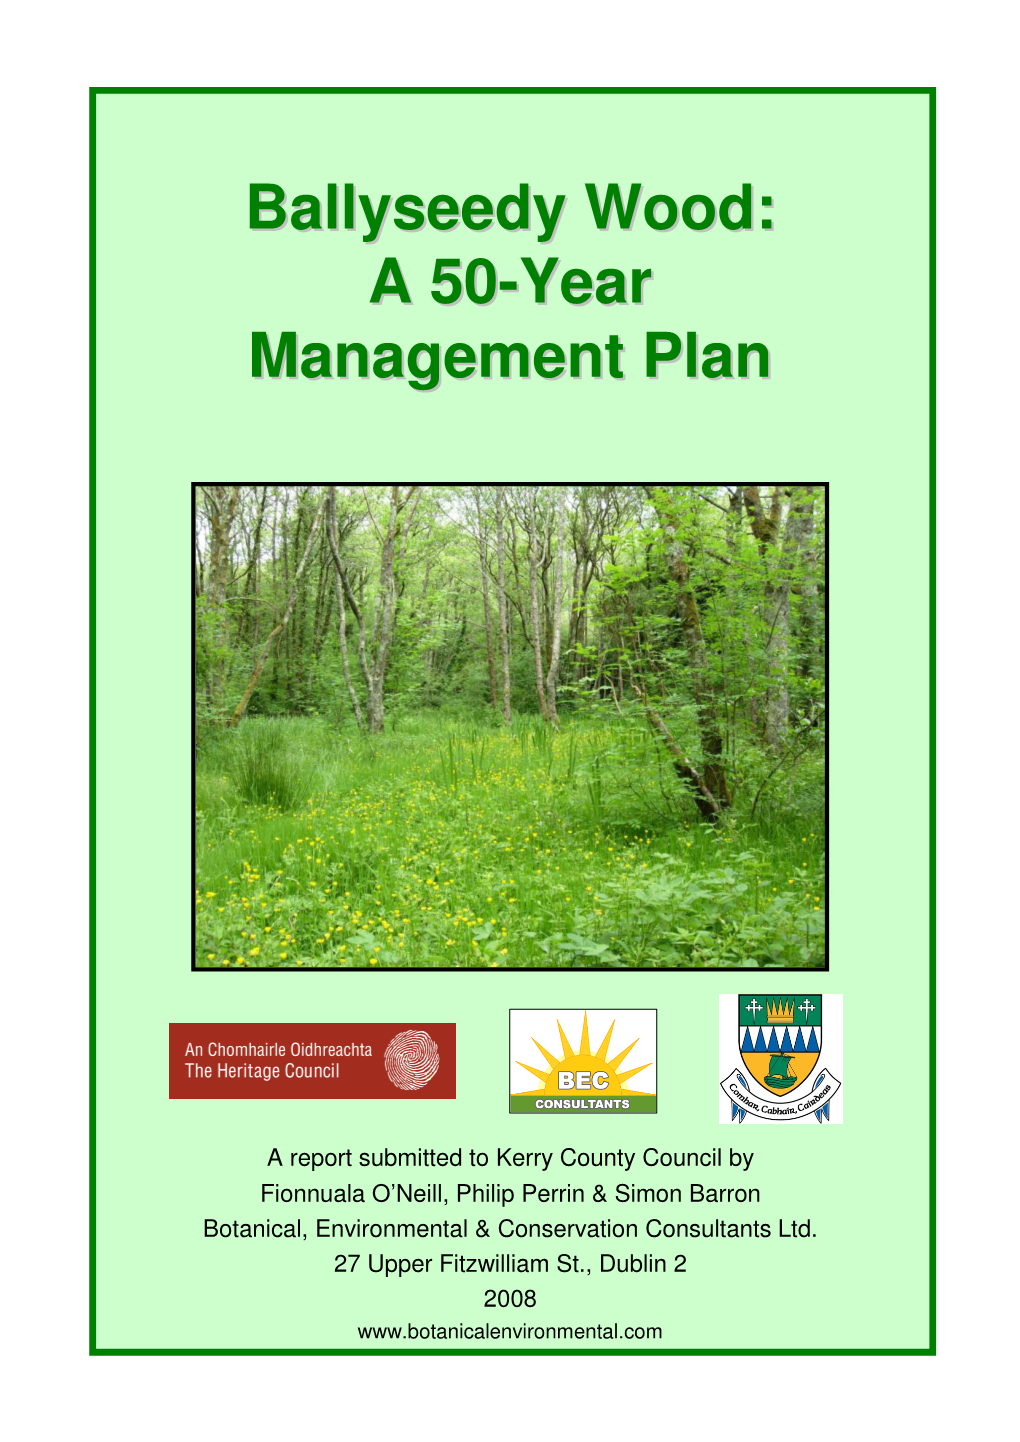 Ballyseedy Wood: a 50-Year Management Plan